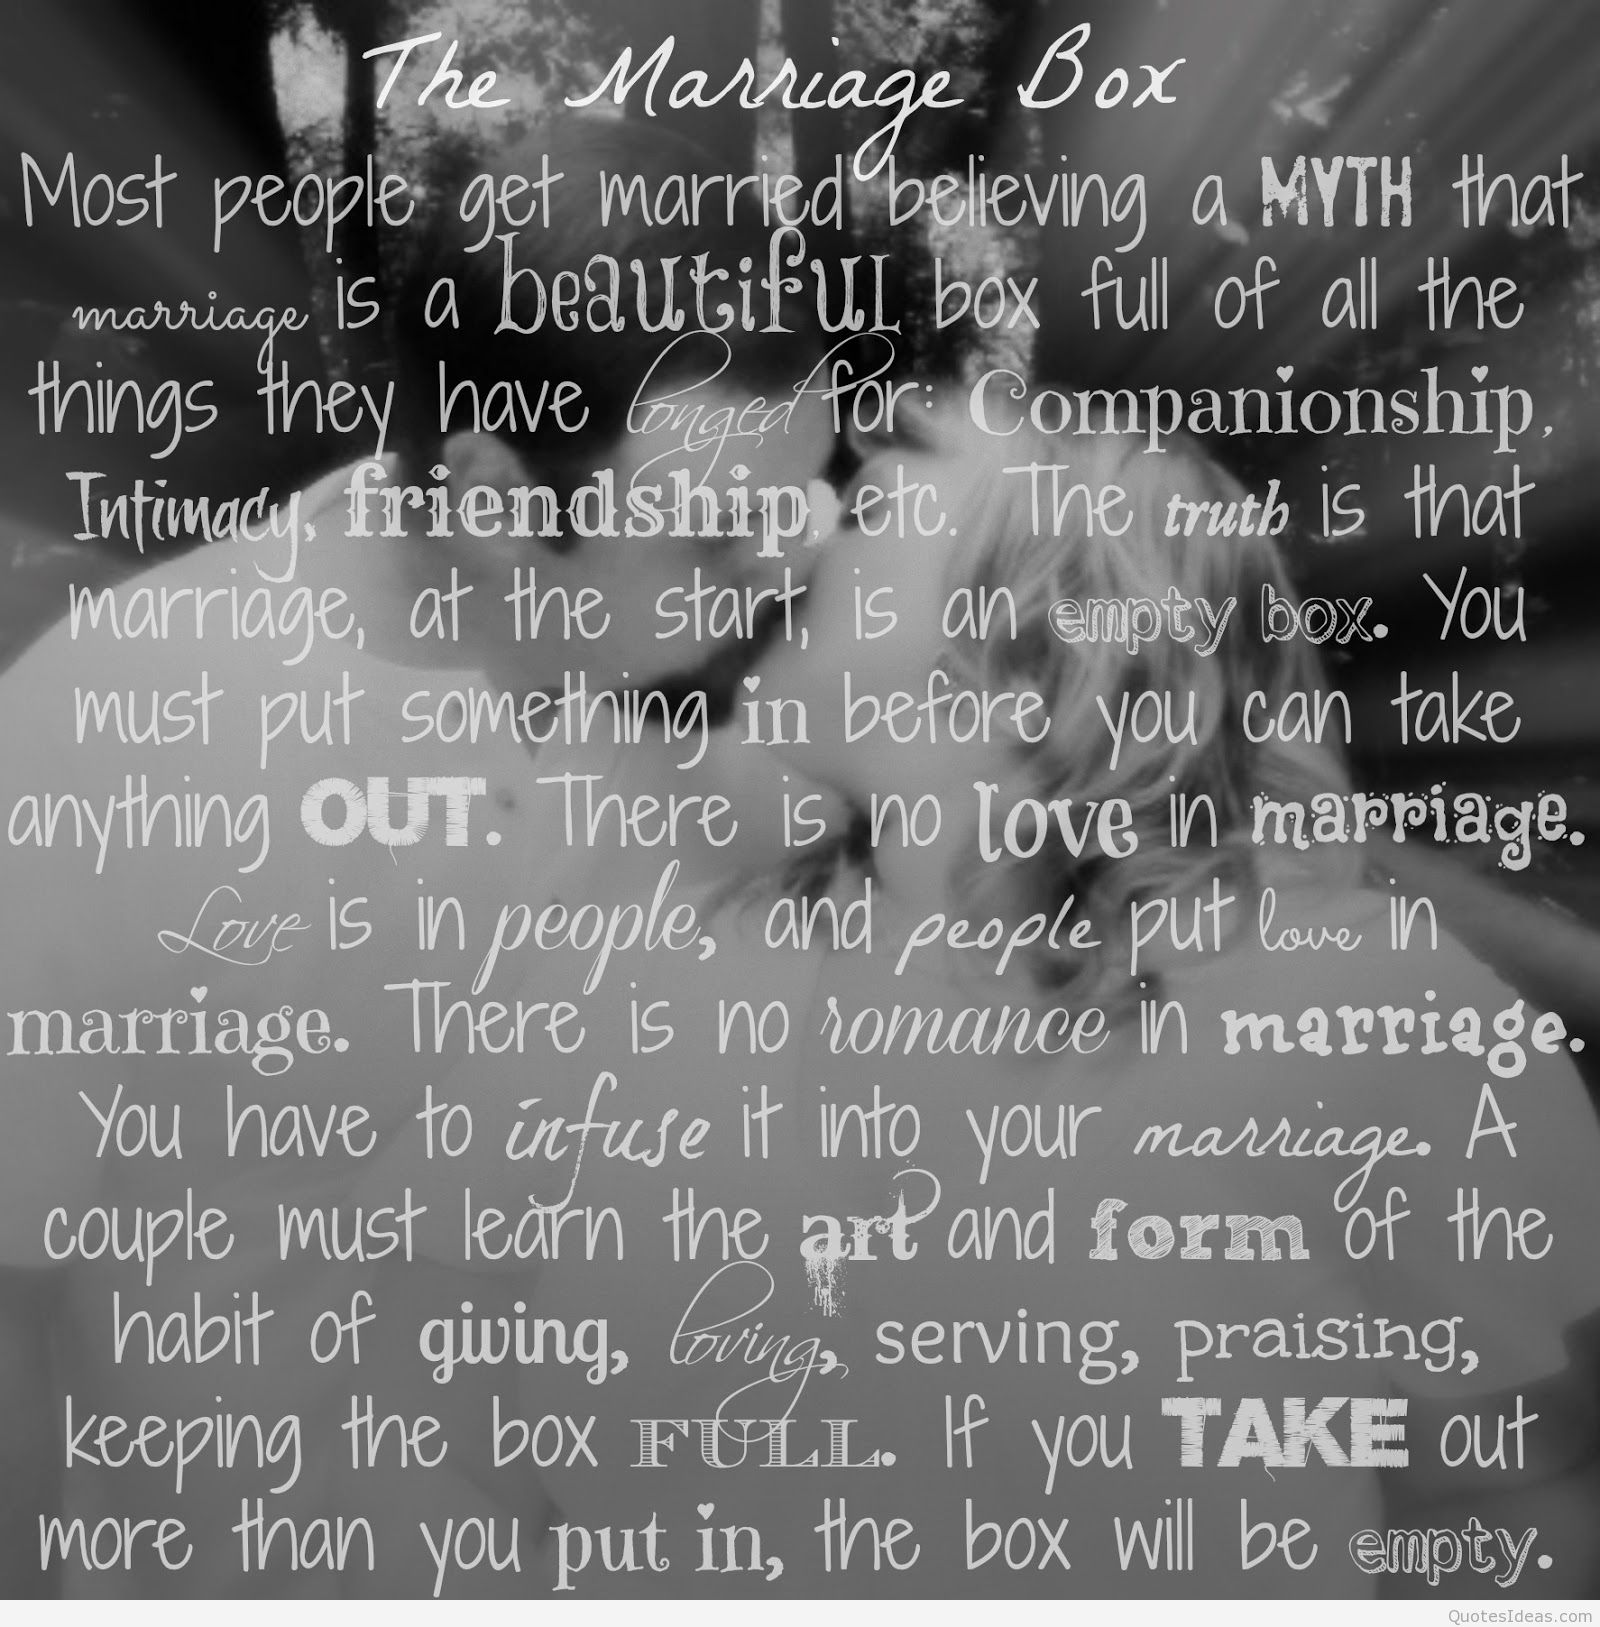 Best Marriage Advice Quotes Quotesgram